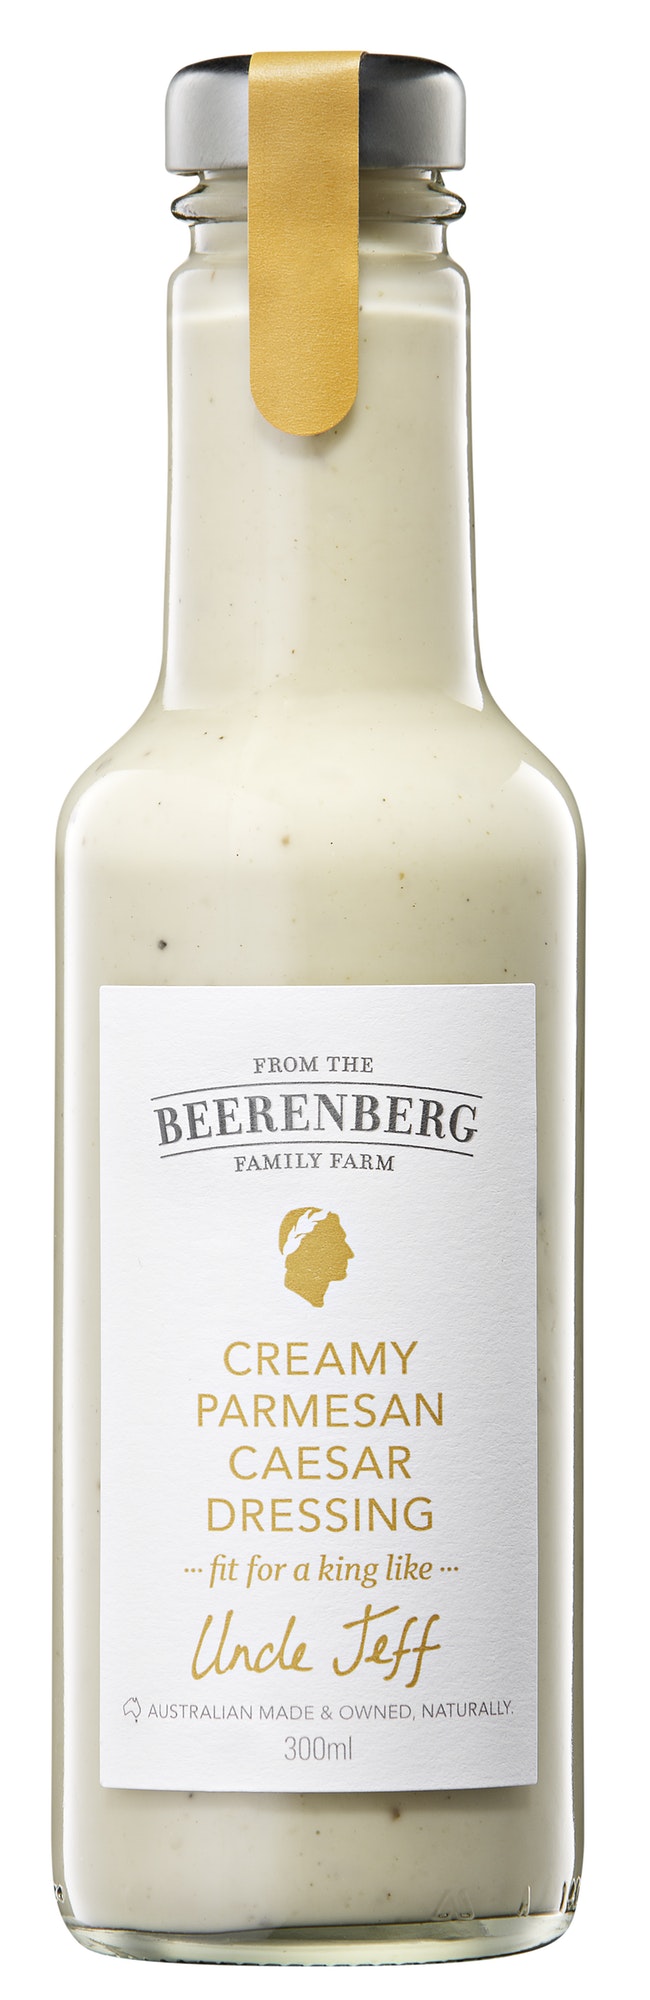 Beerenberg Creamy Parmesan Ceaser Dressing 300ml